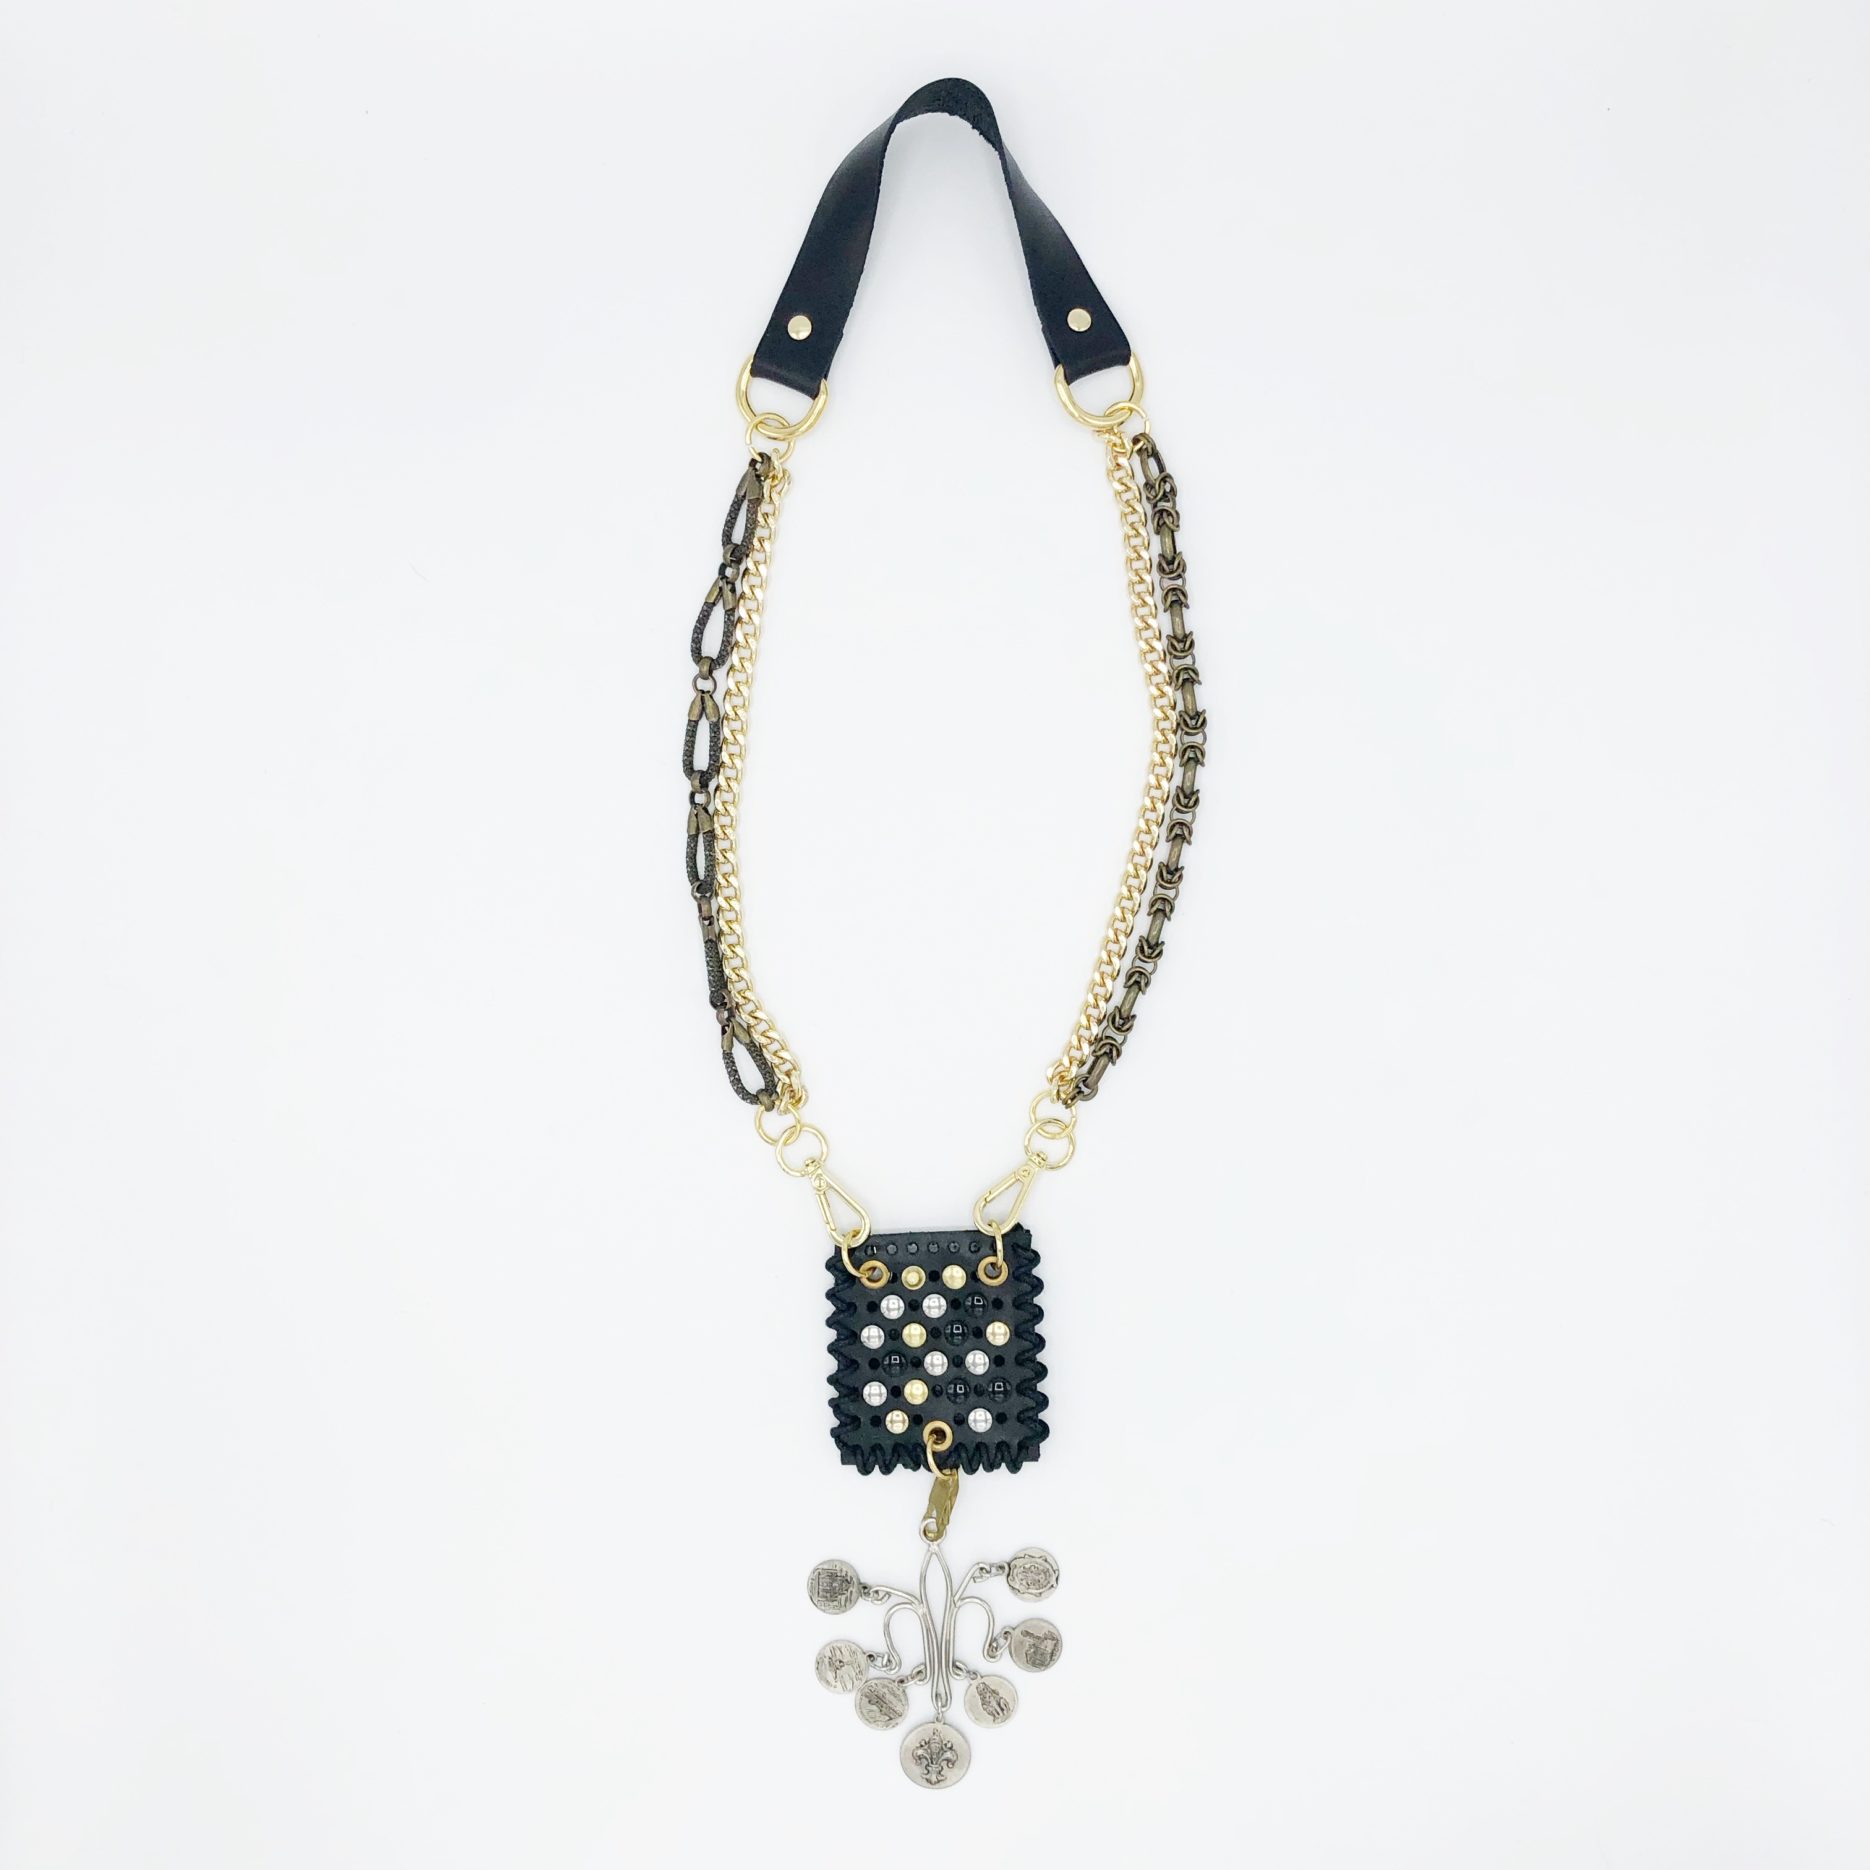 talisman en cuir à porter autour du cou ou de la taille,taille miniature, on peut par exemple y glisser un mot doux et y accrocher un bijoux.